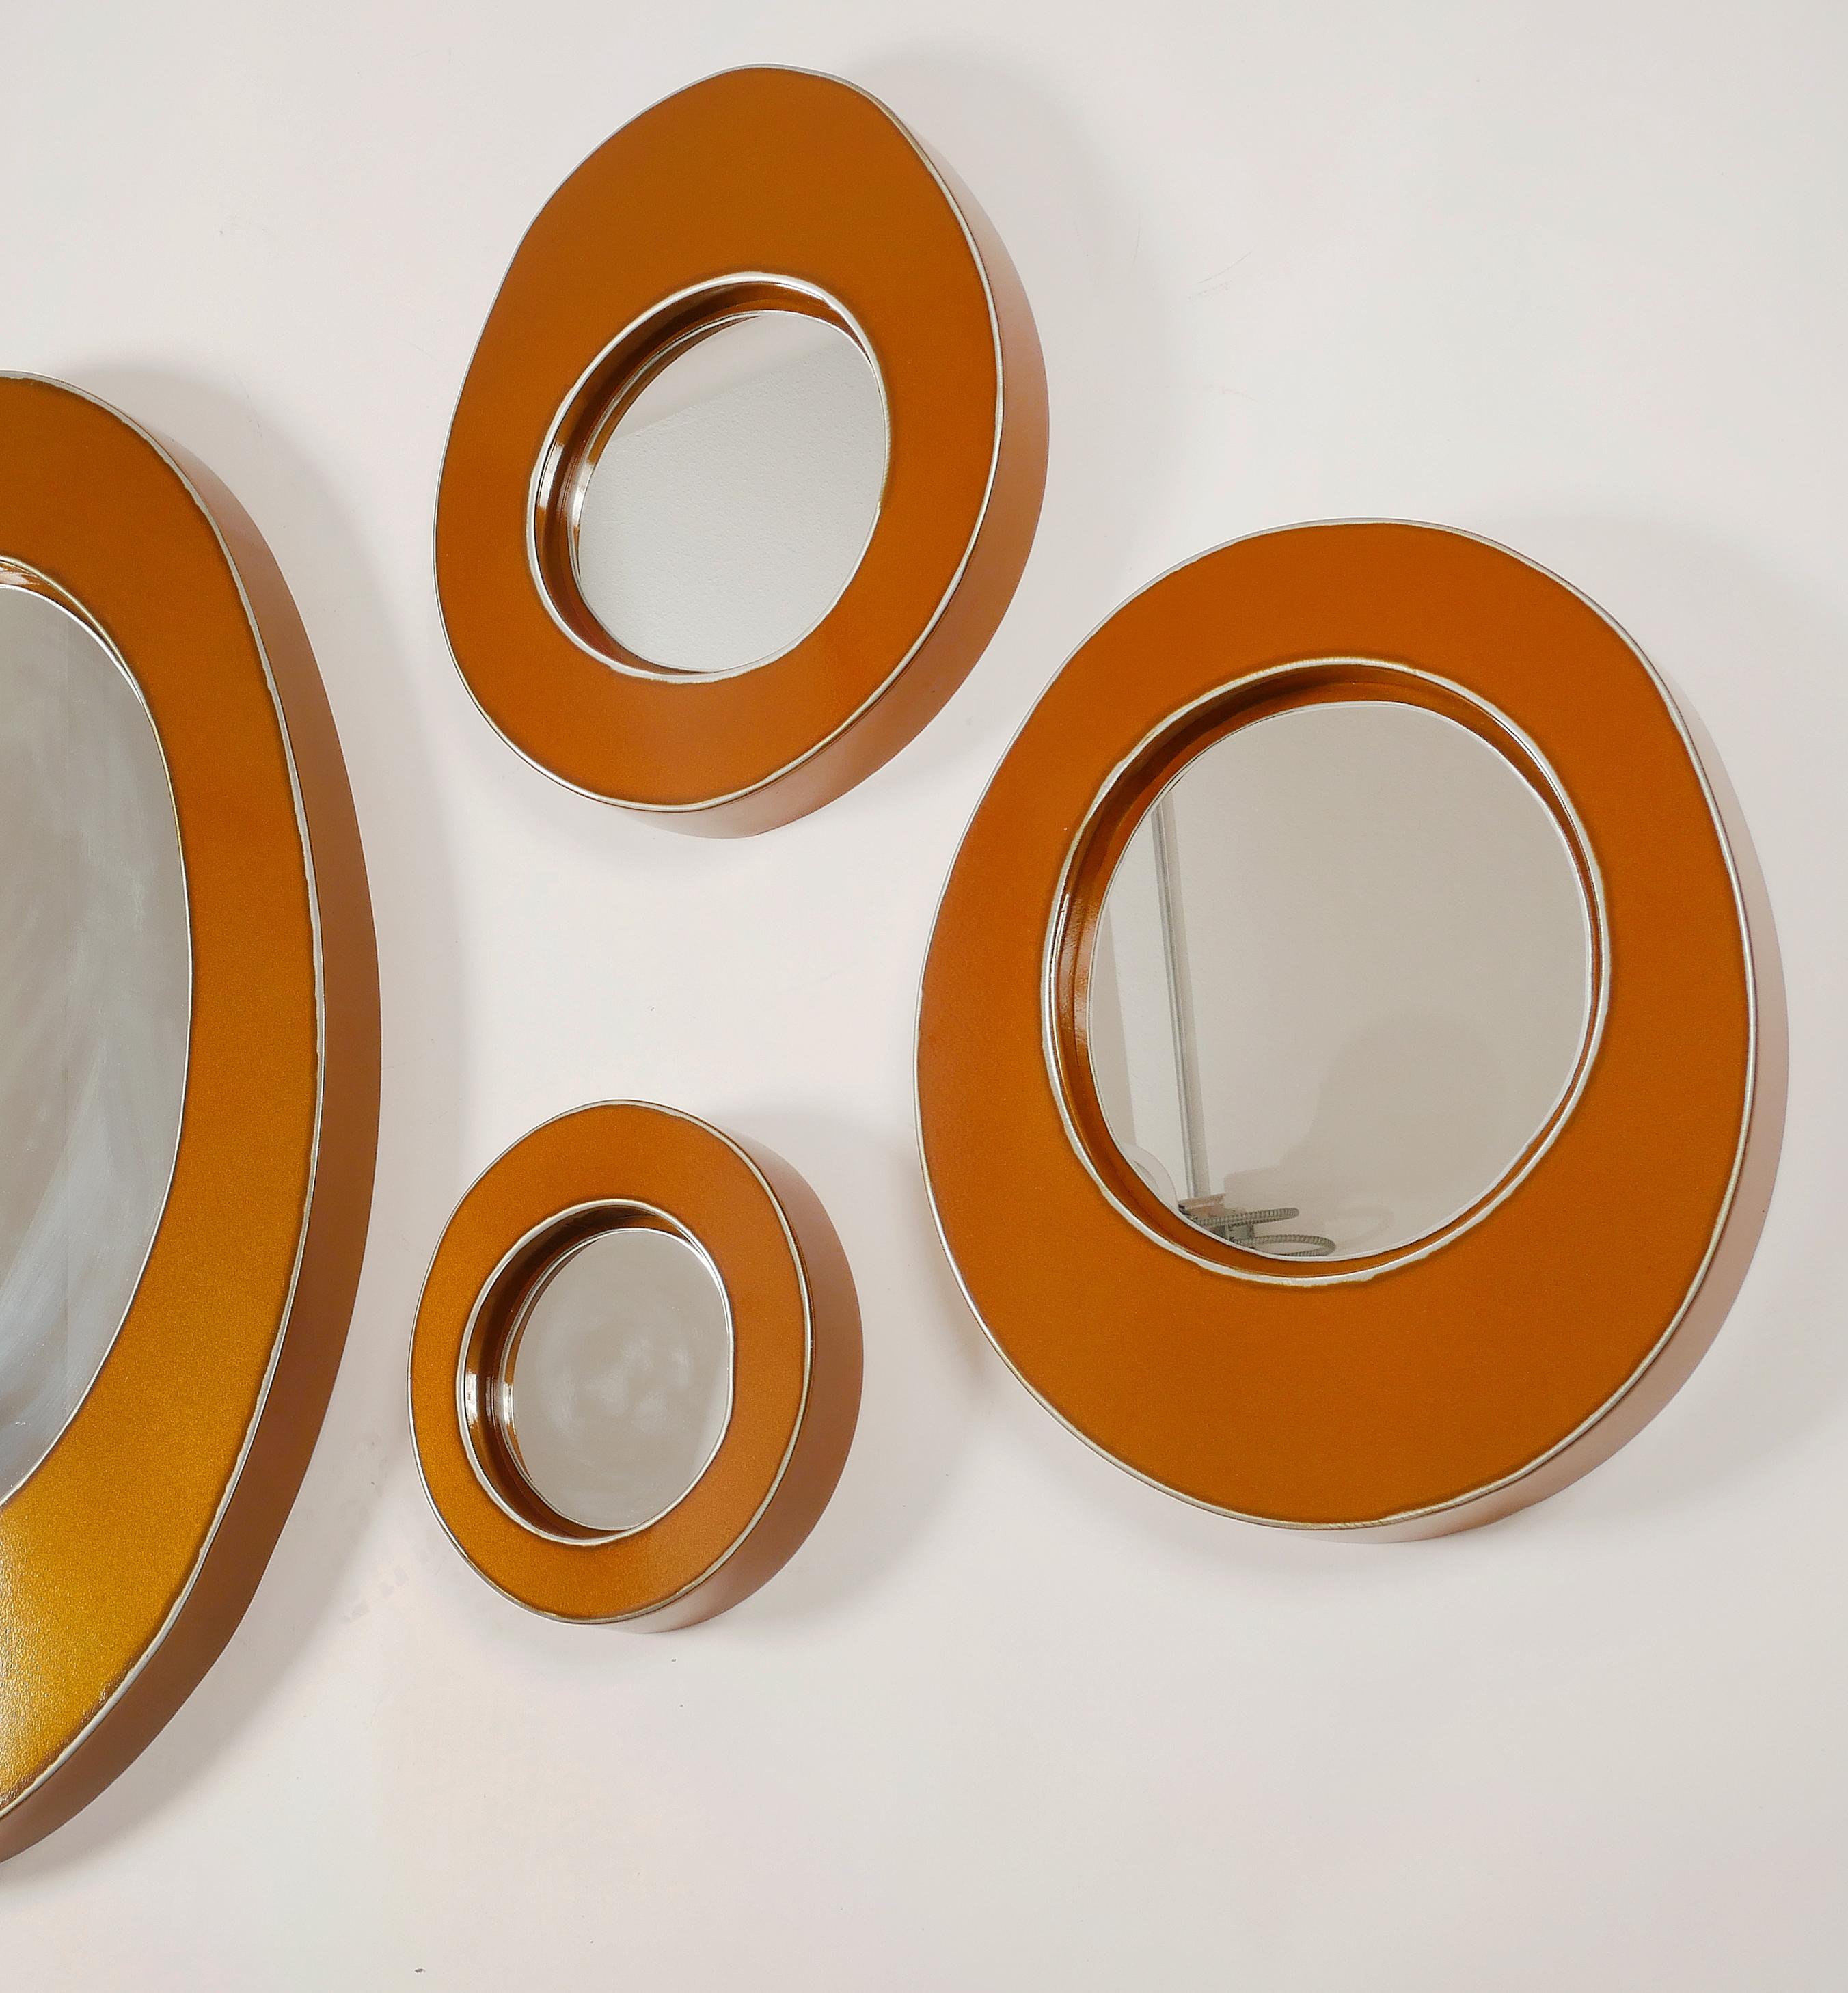 Bert Furnari Studio groupe de 7 miroirs abstraits à forme libre

Nous proposons à la vente un groupe de sept miroirs ovales et ronds en aluminium sculpté, avec une finition en poudre orange/cuivre. Le groupement peut être disposé comme vous le